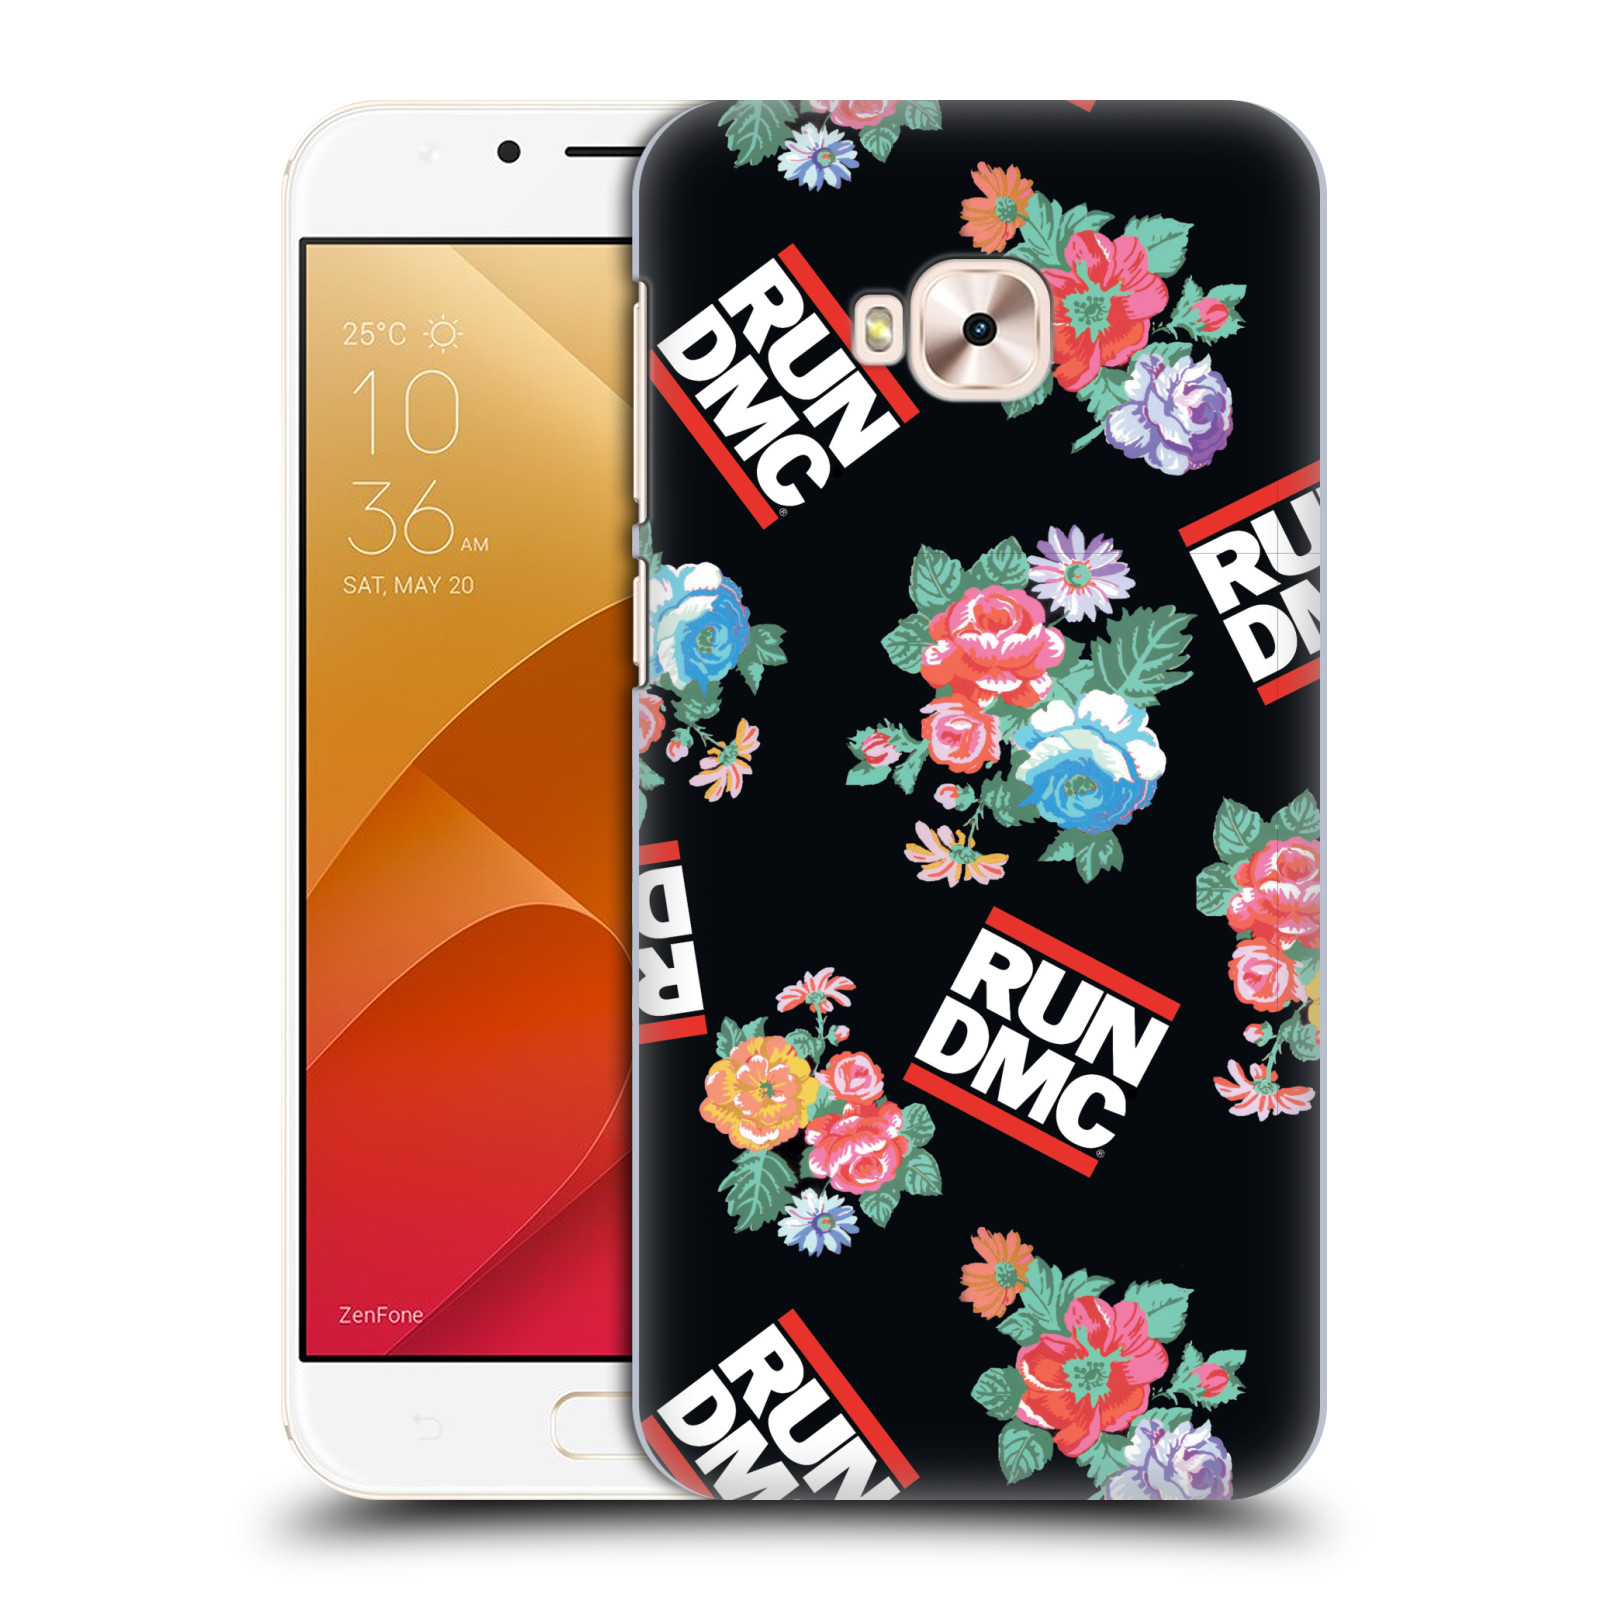 HEAD CASE plastový obal na mobil Asus Zenfone 4 Selfie Pro ZD552KL rapová kapela Run DMC květiny černé pozadí